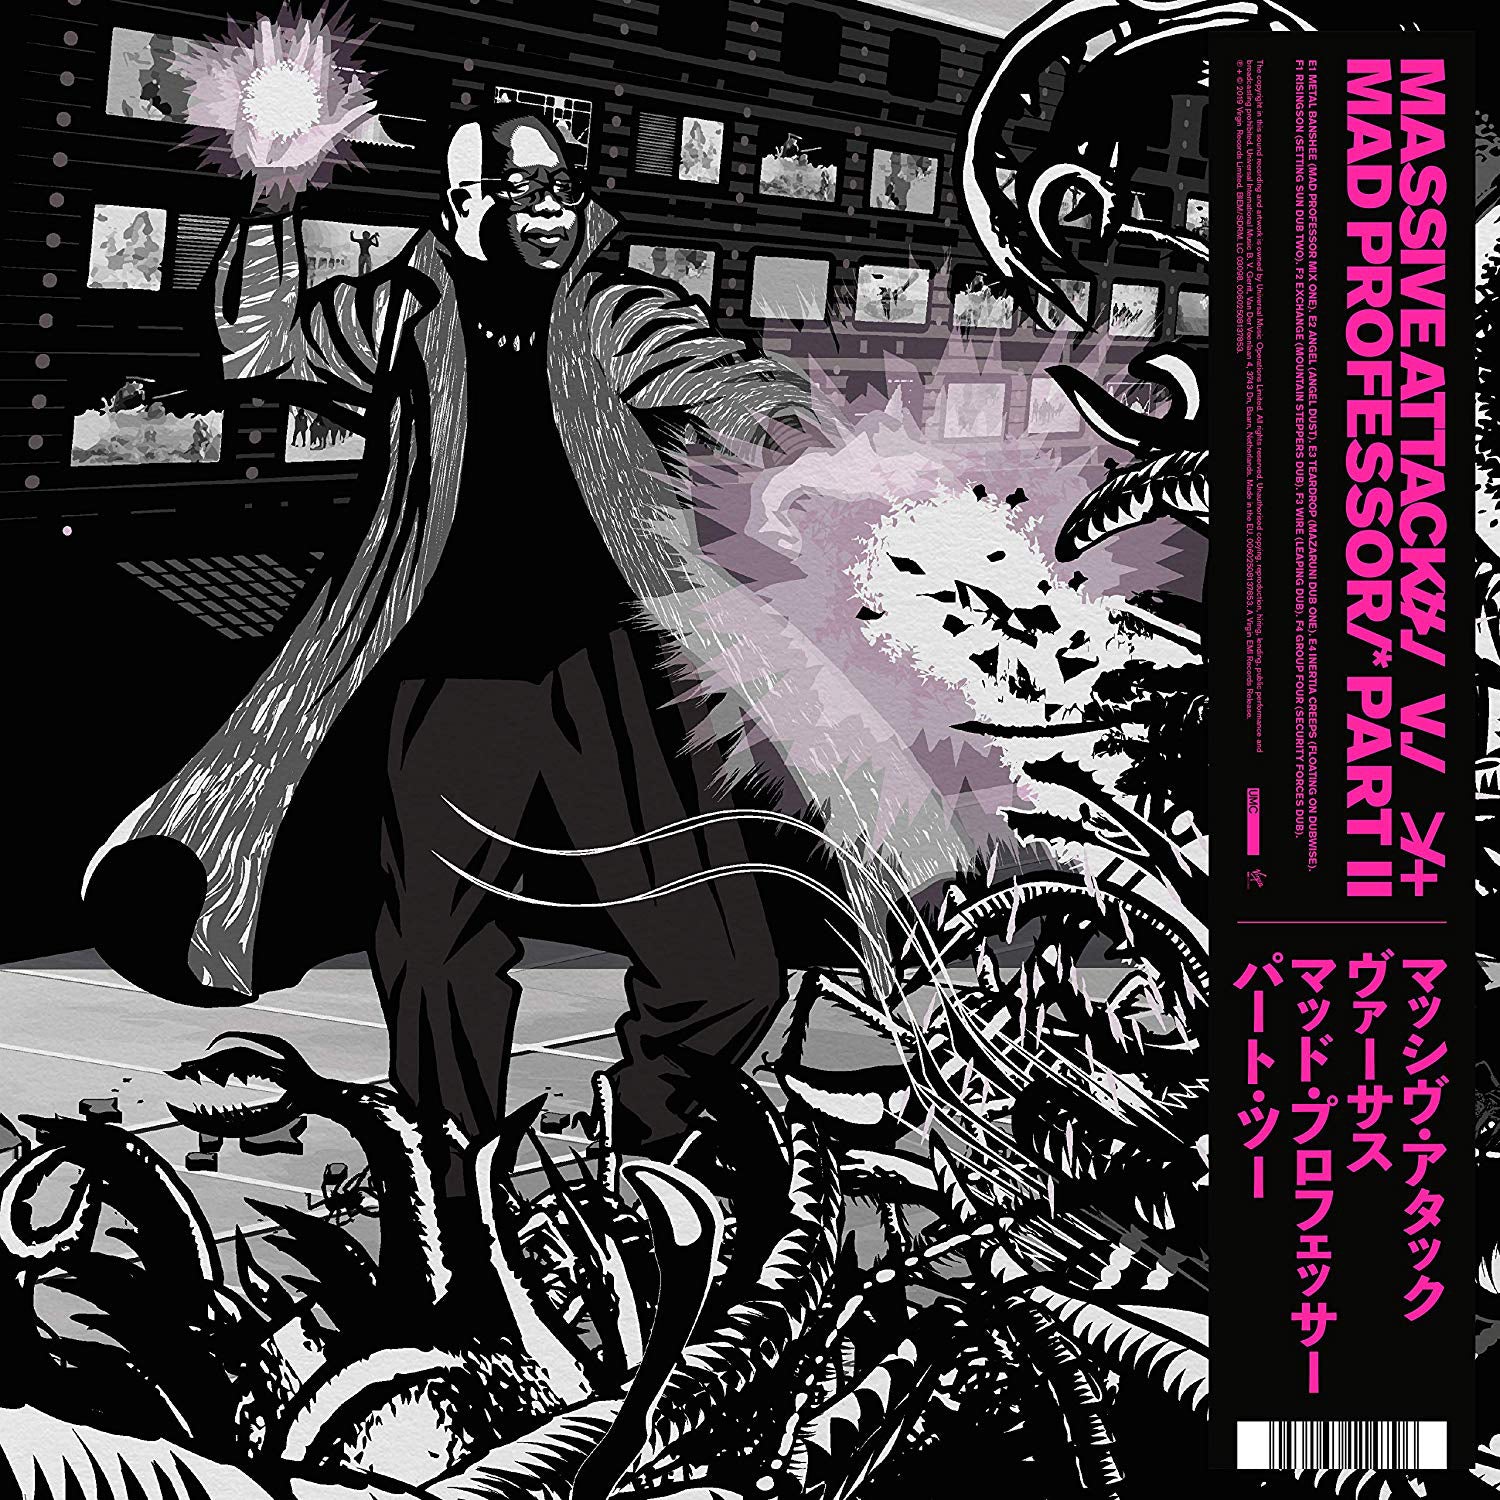 Massive Attack Vs Mad Professor Part II: Mezzanine Remix Tapes '98